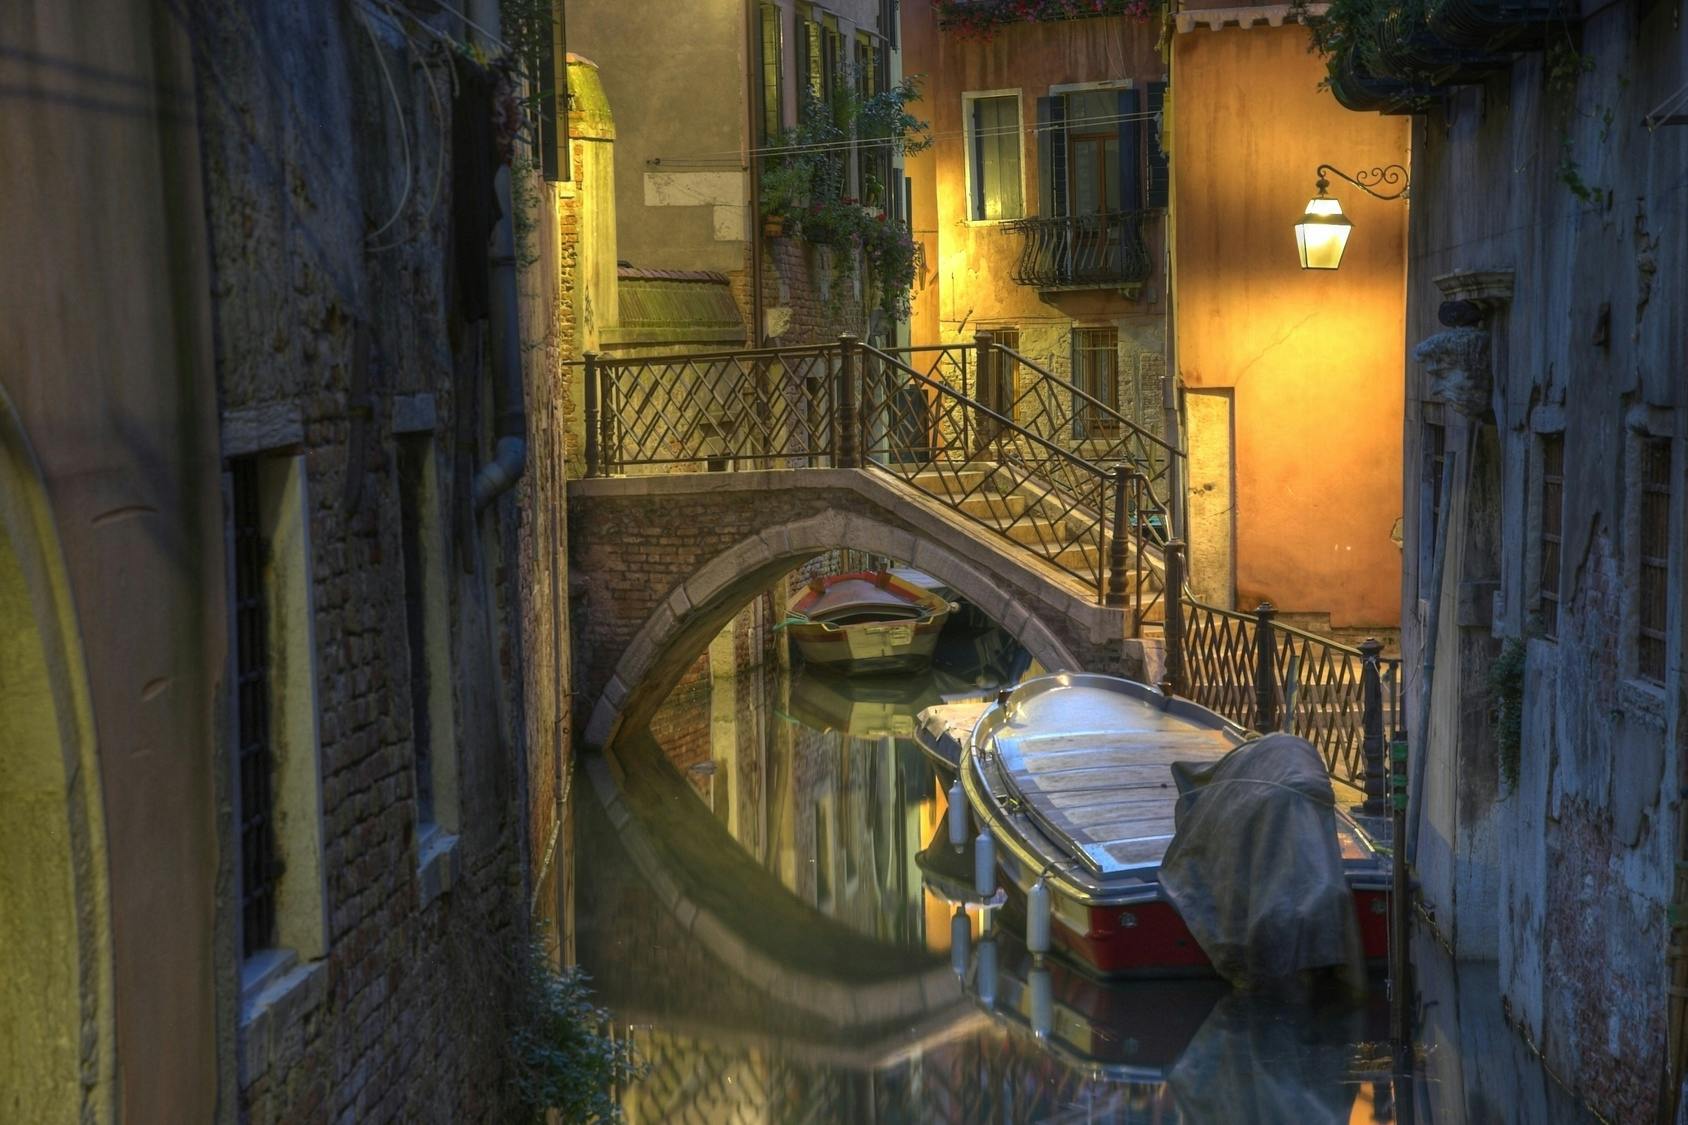 Führung am Abend auf den Spuren von Geistern und Legenden in Venedig